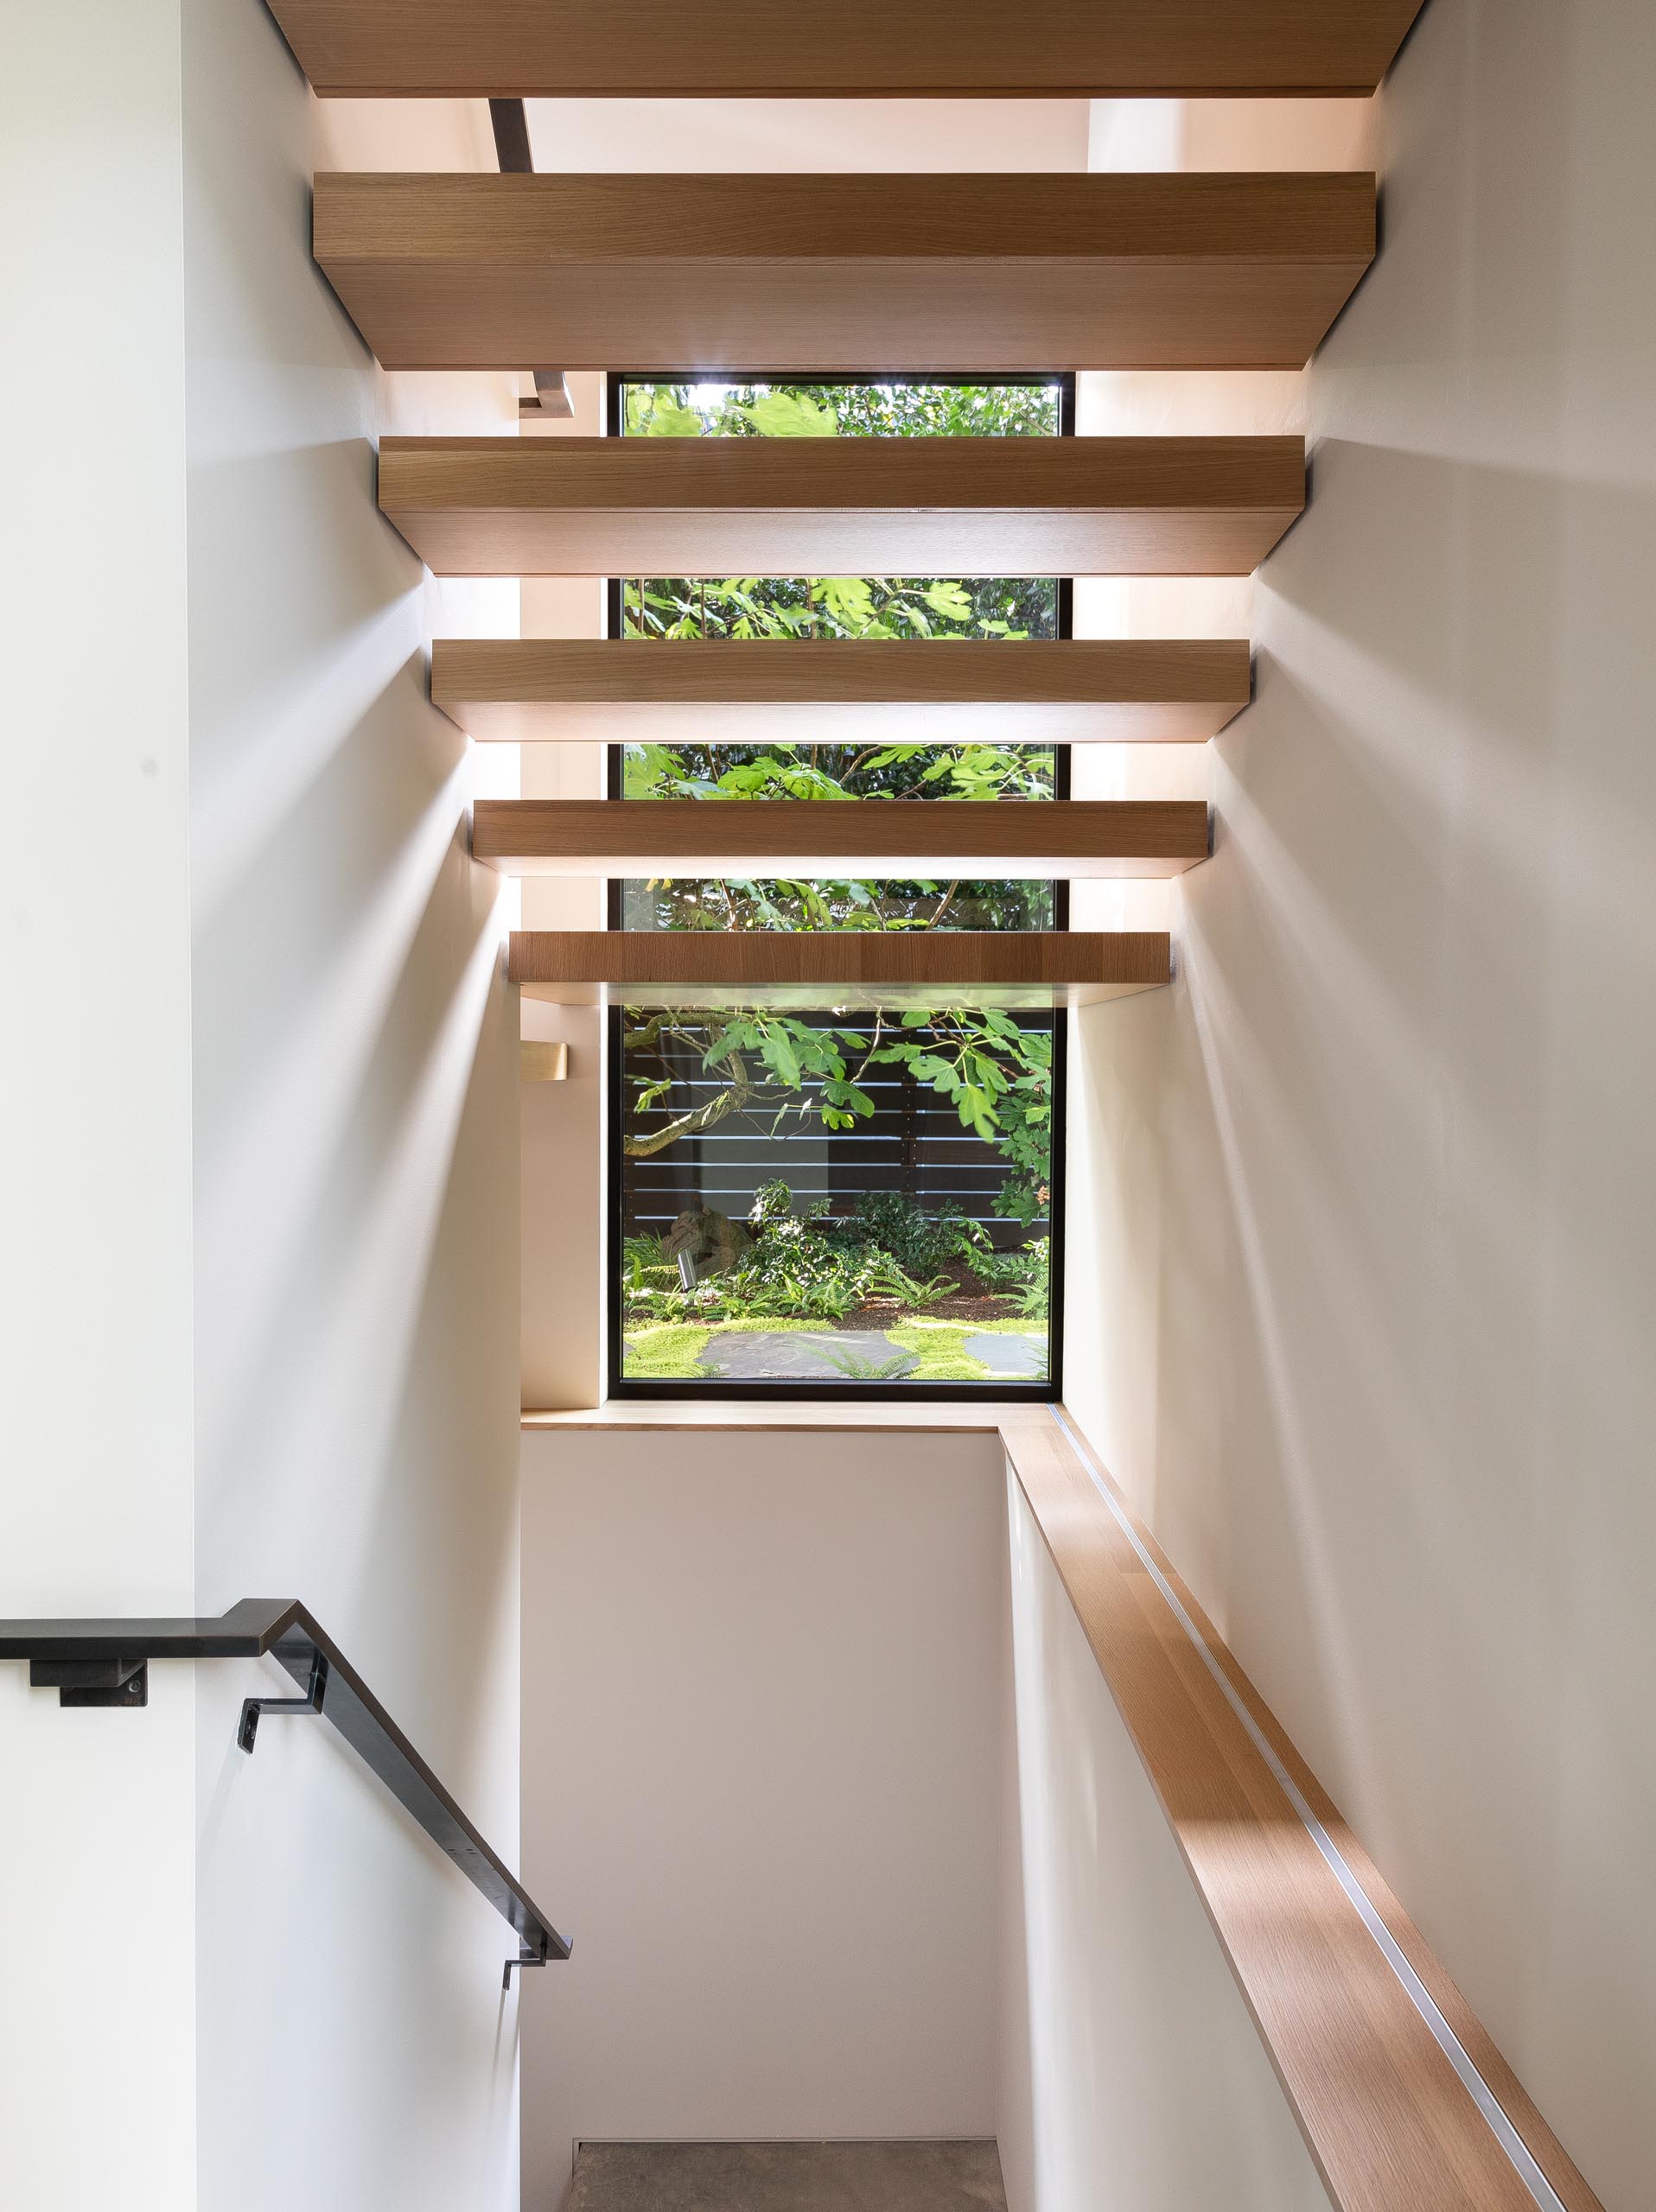 Деревянная лестница соединяет верхние социальные зоны этого современного дома со спальнями и ванными комнатами, расположенными на нижнем уровне.